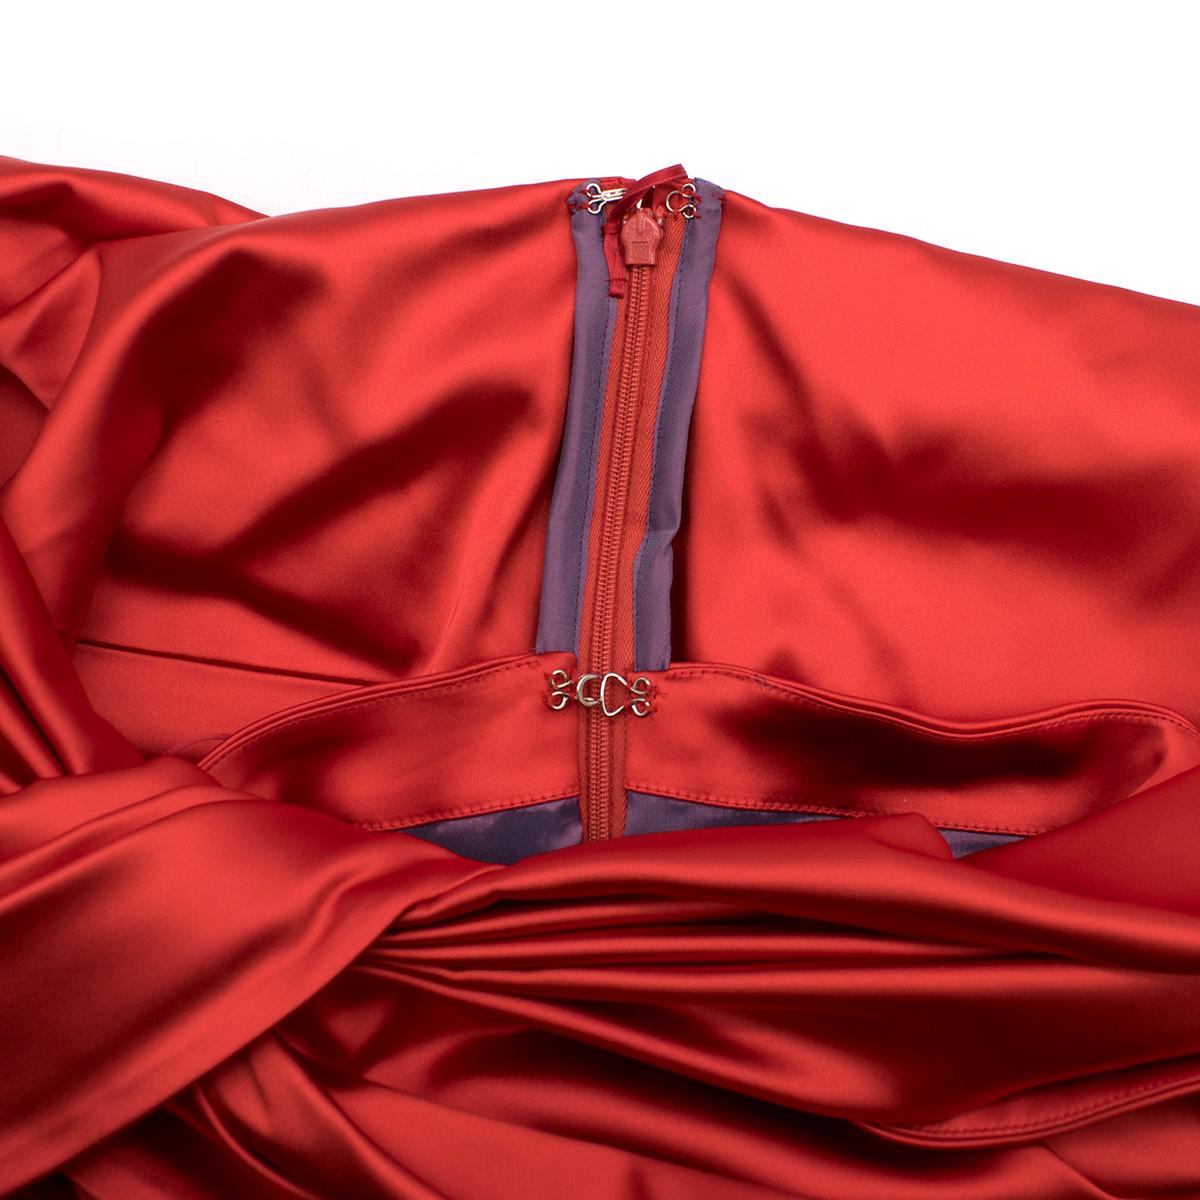 Red Talbot Runhof off-the-shoulder duchess-satin dress US 4